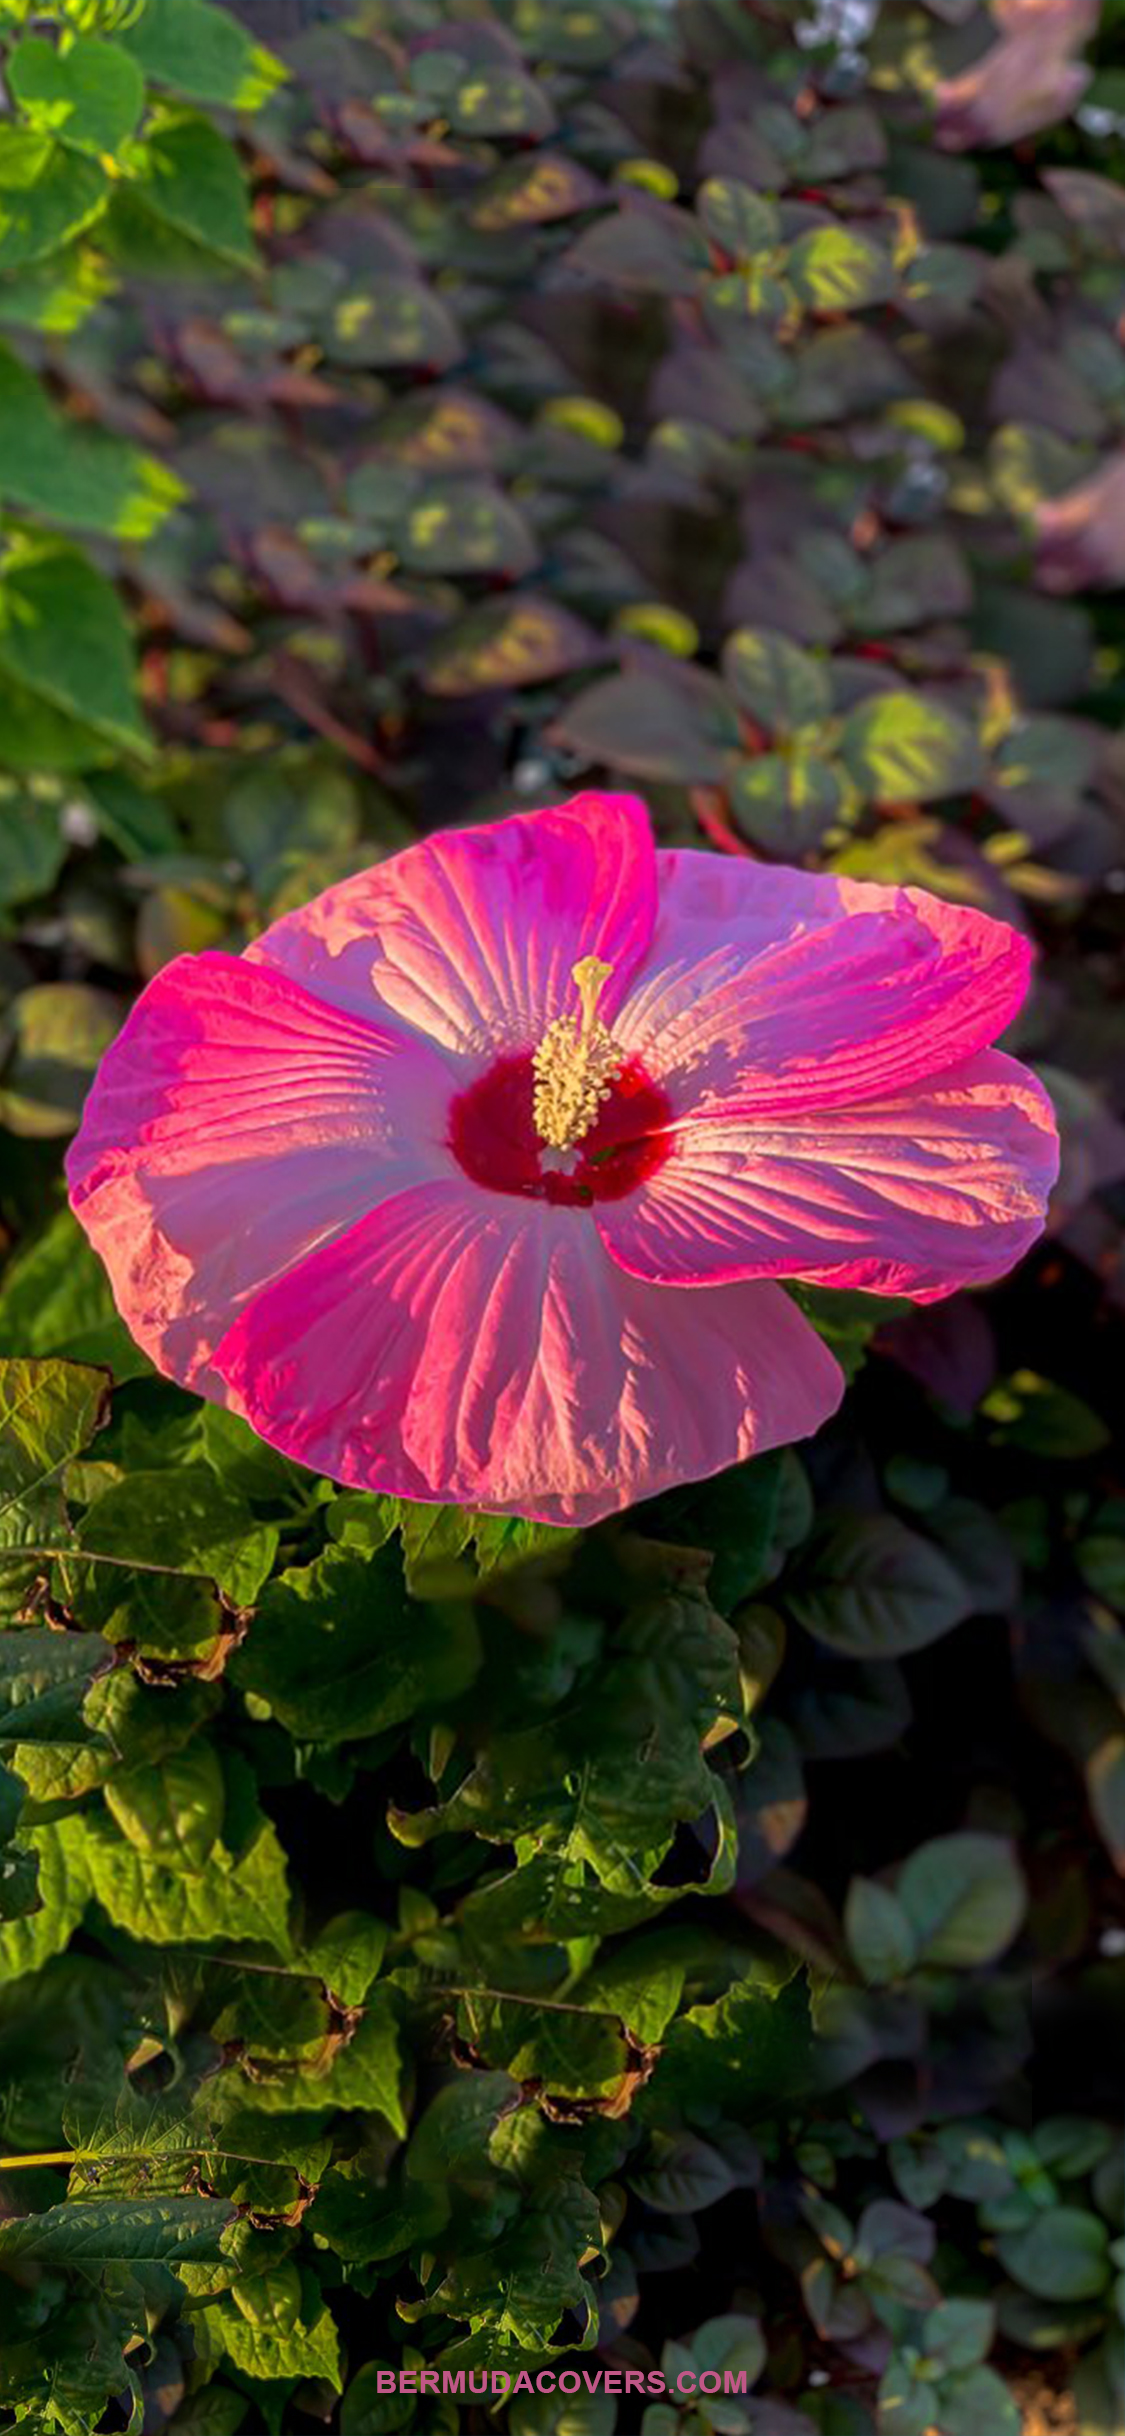 Pink-Bermuda-Hibiscus-Flower-Bernews-Mobile-phone-wallpaper-lock-screen-design-image-photo-3SH3k3ff